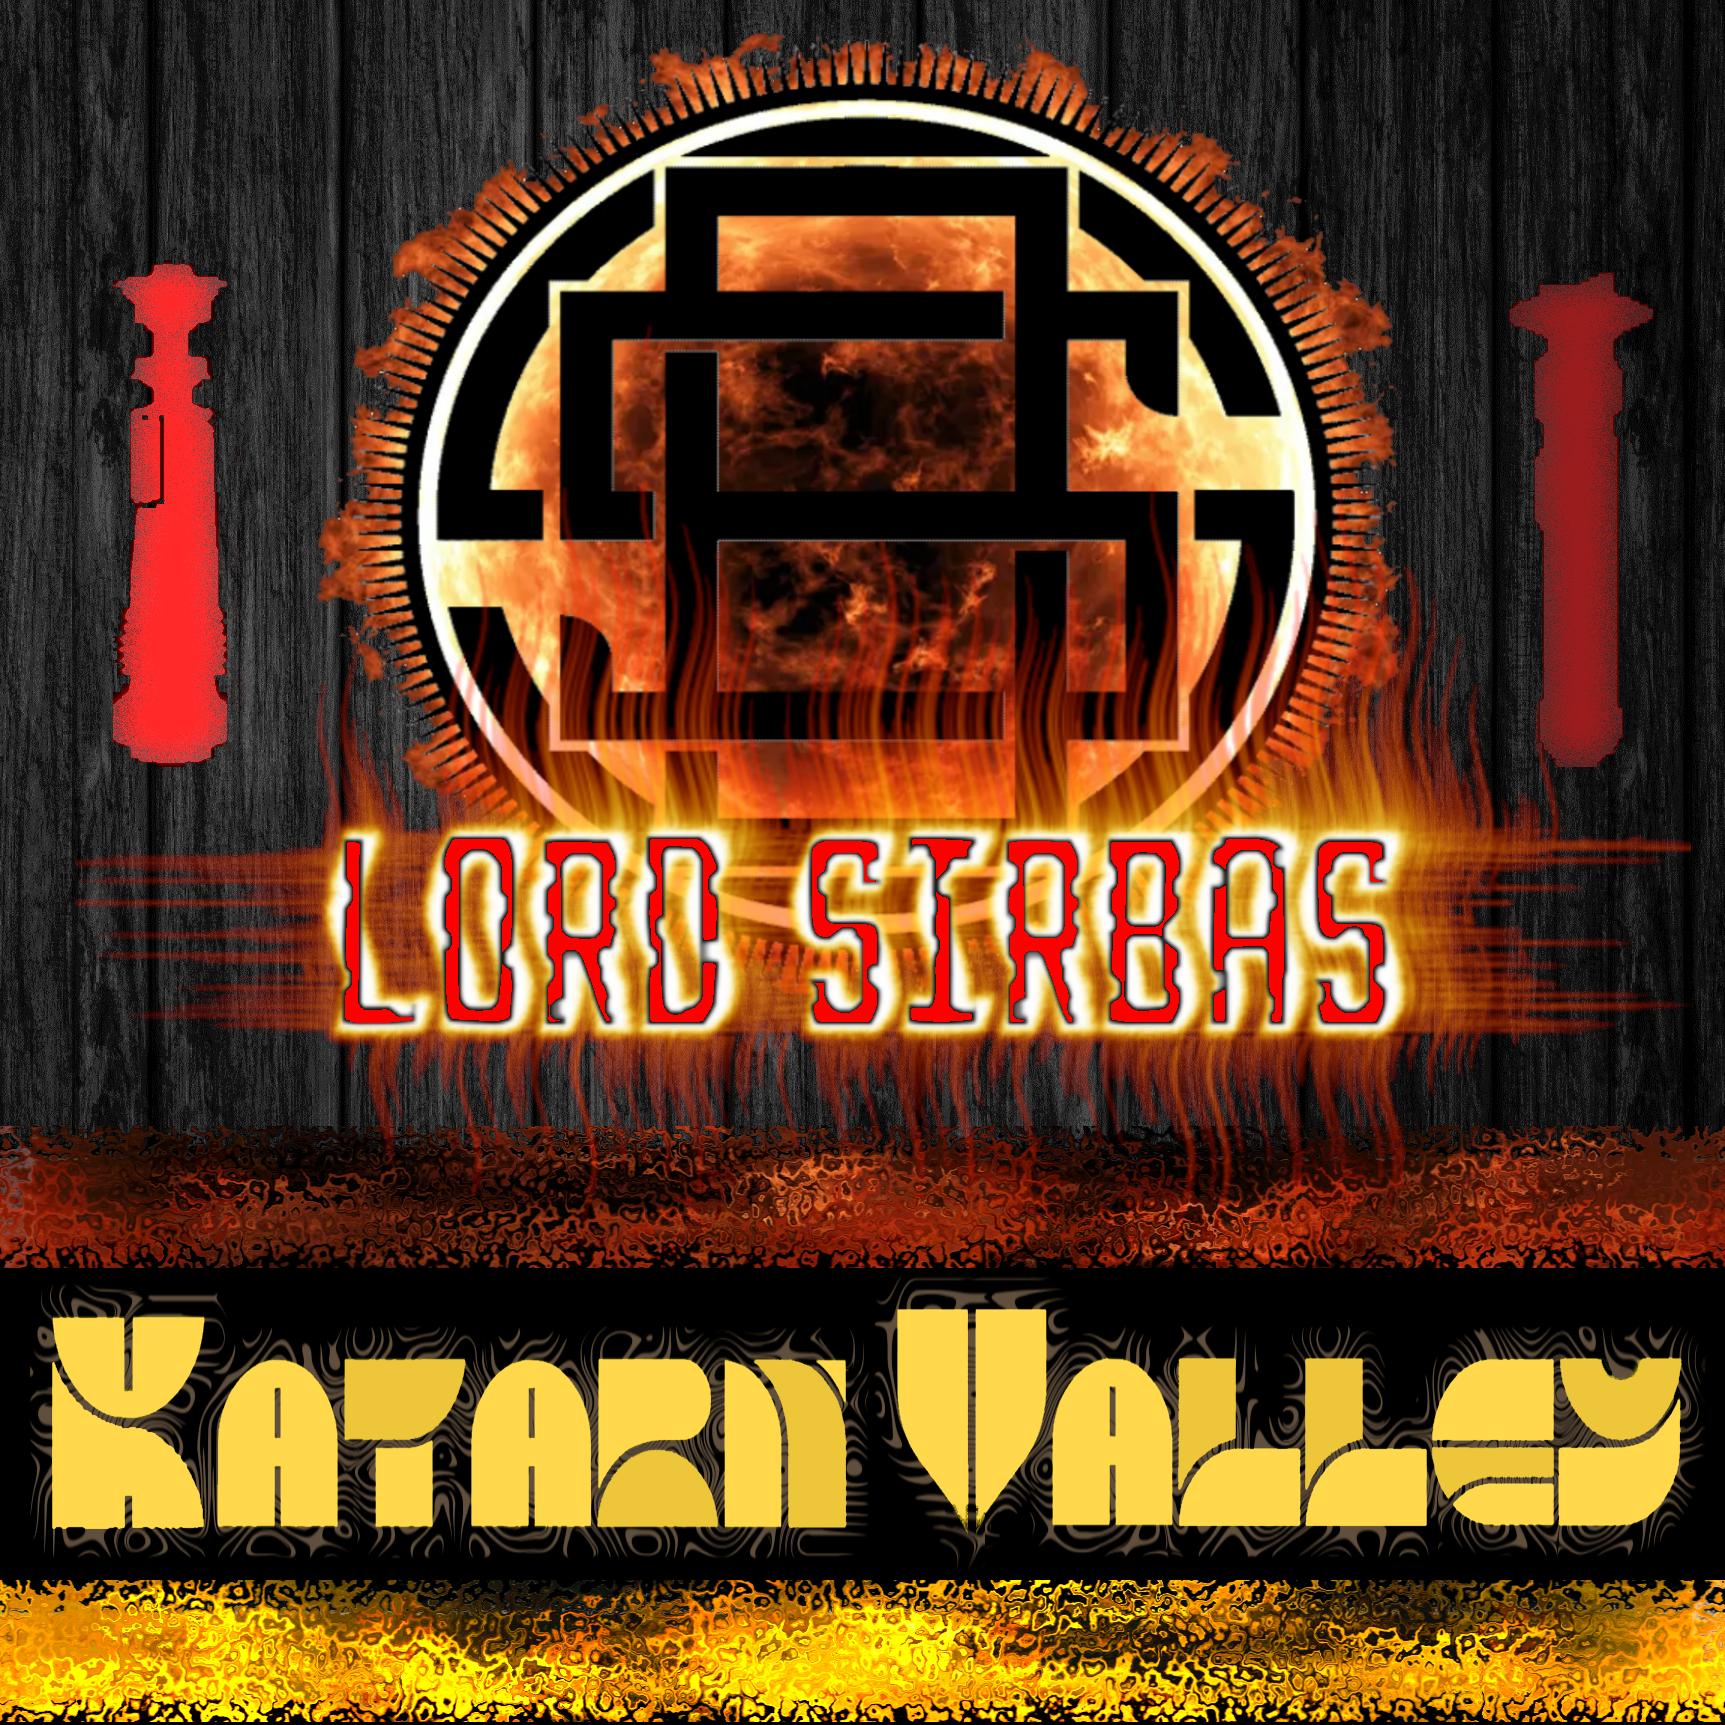 "Katarn Valley" SoundFont for CFX, Proffie, Golden Harvest, & XenoPixel